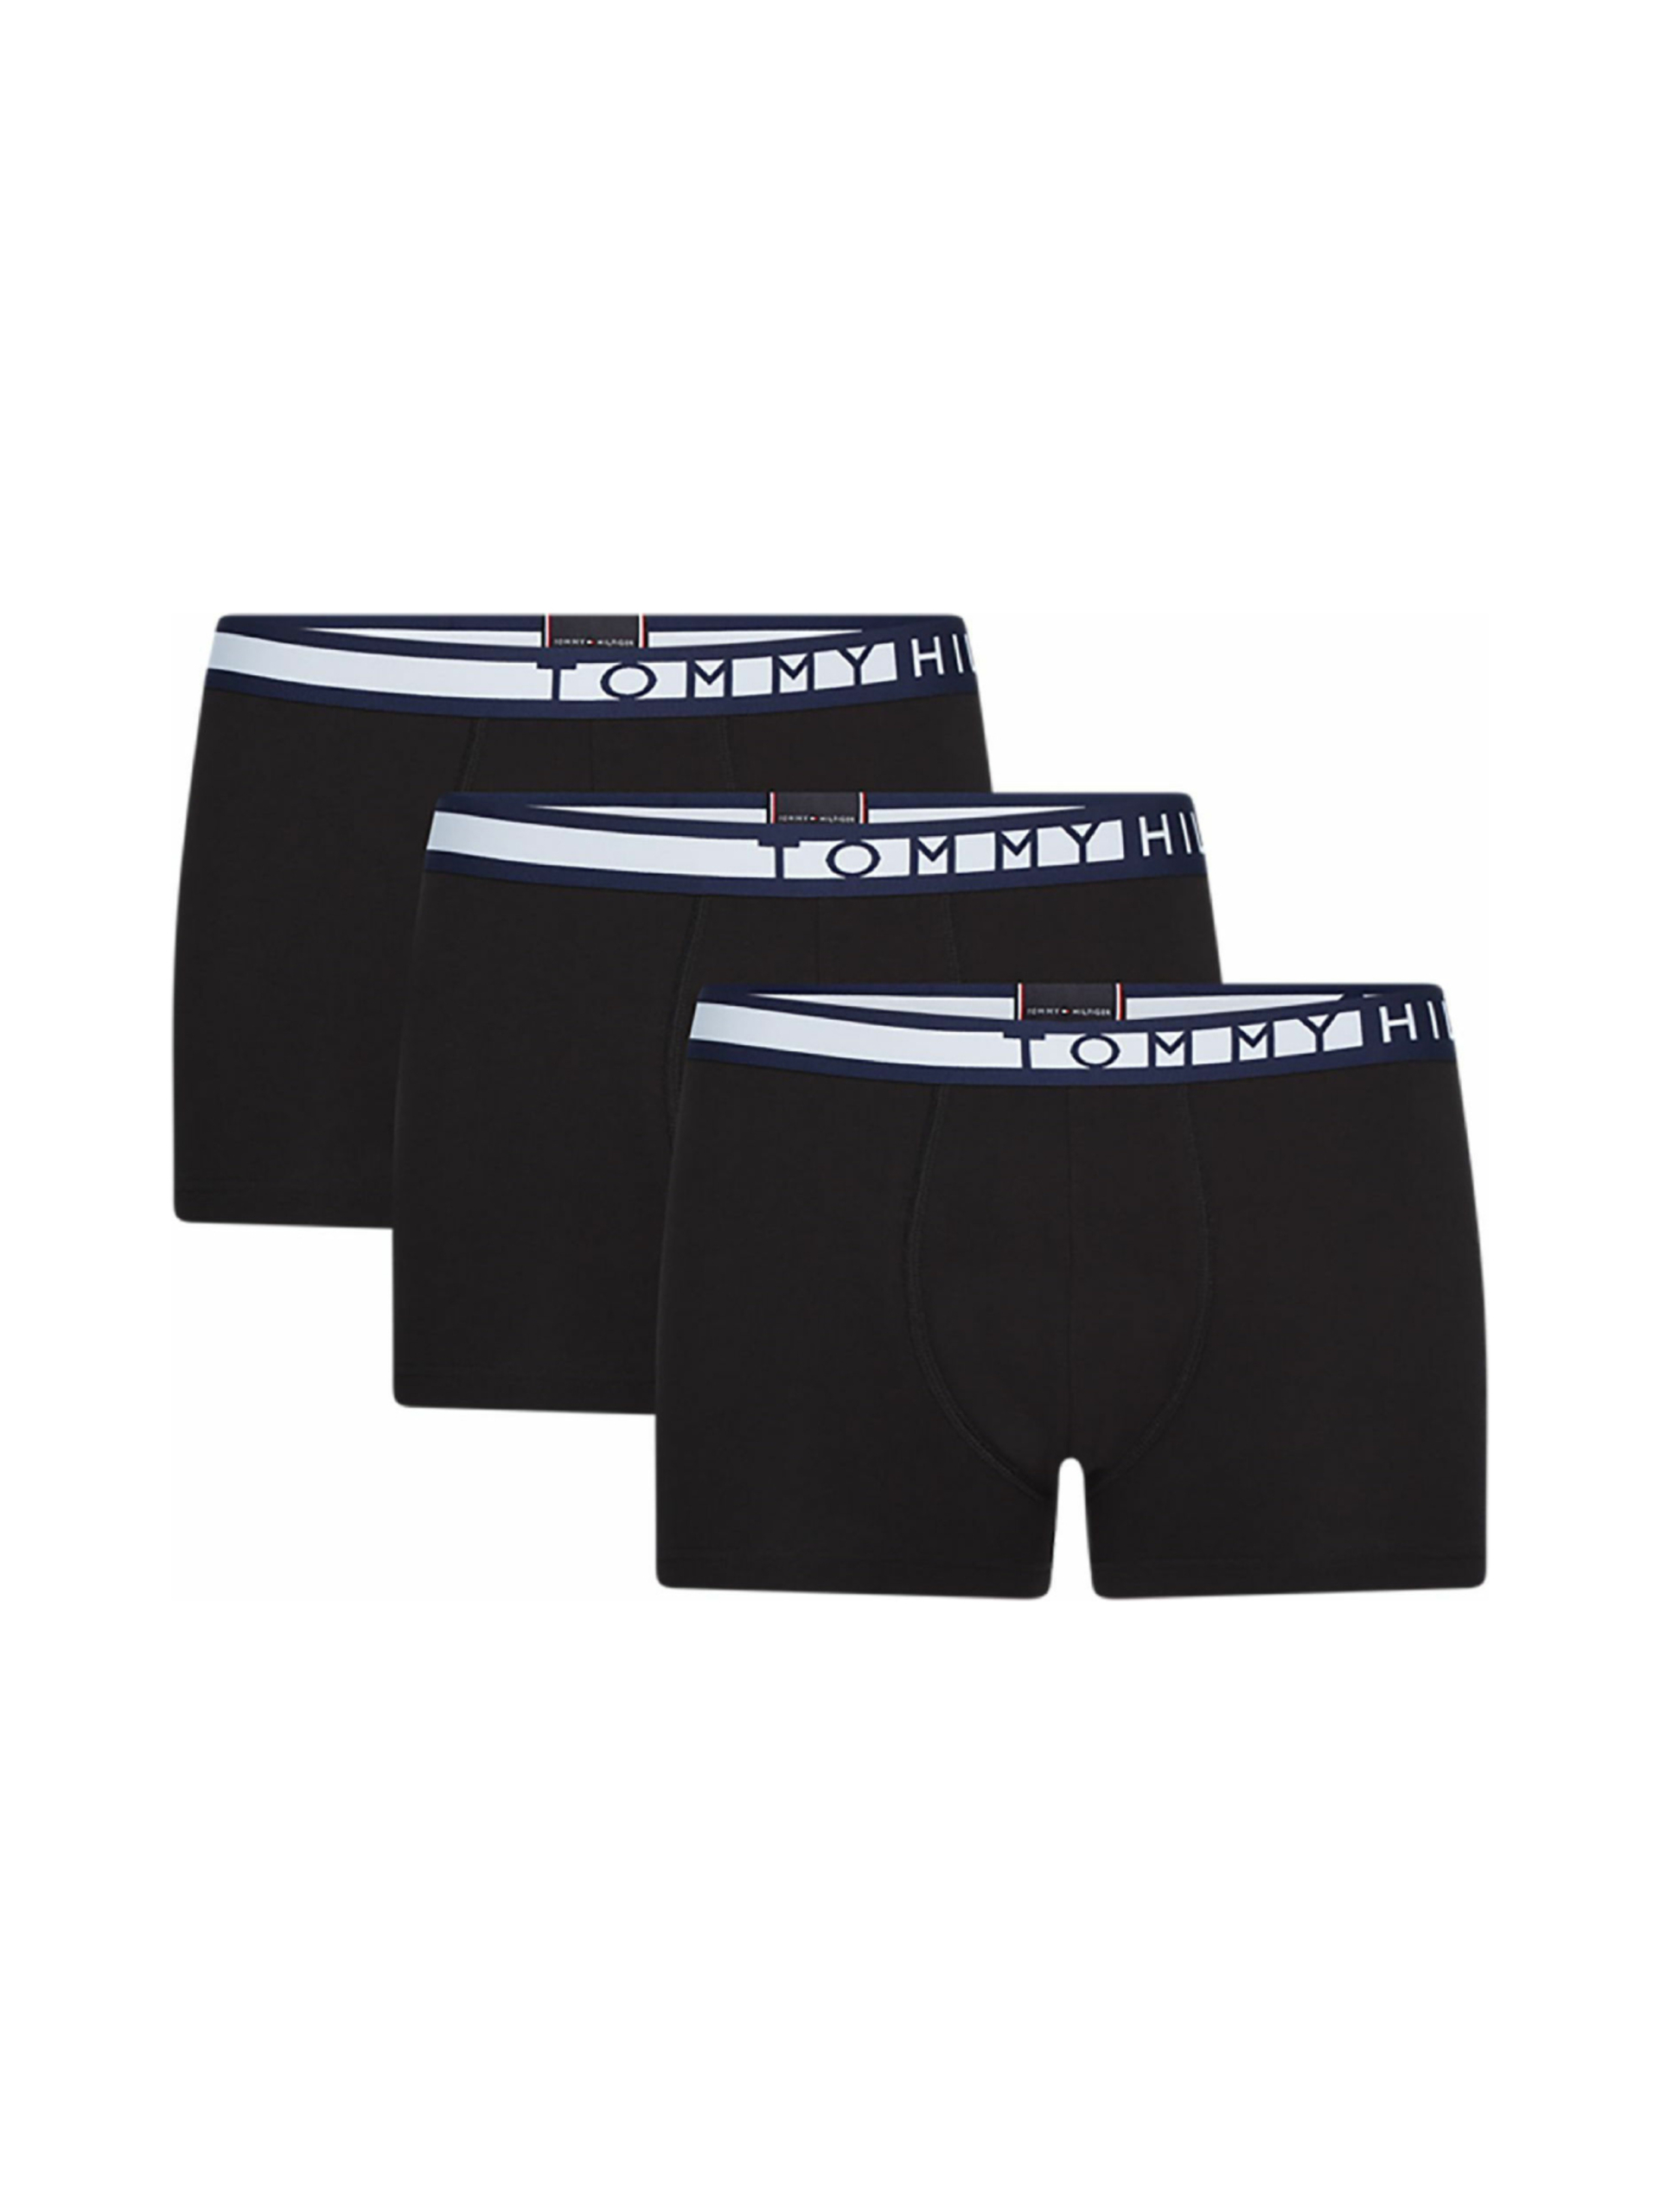 Tommy Hilfiger pánské černé boxerky 3 pack - XL (0R9)